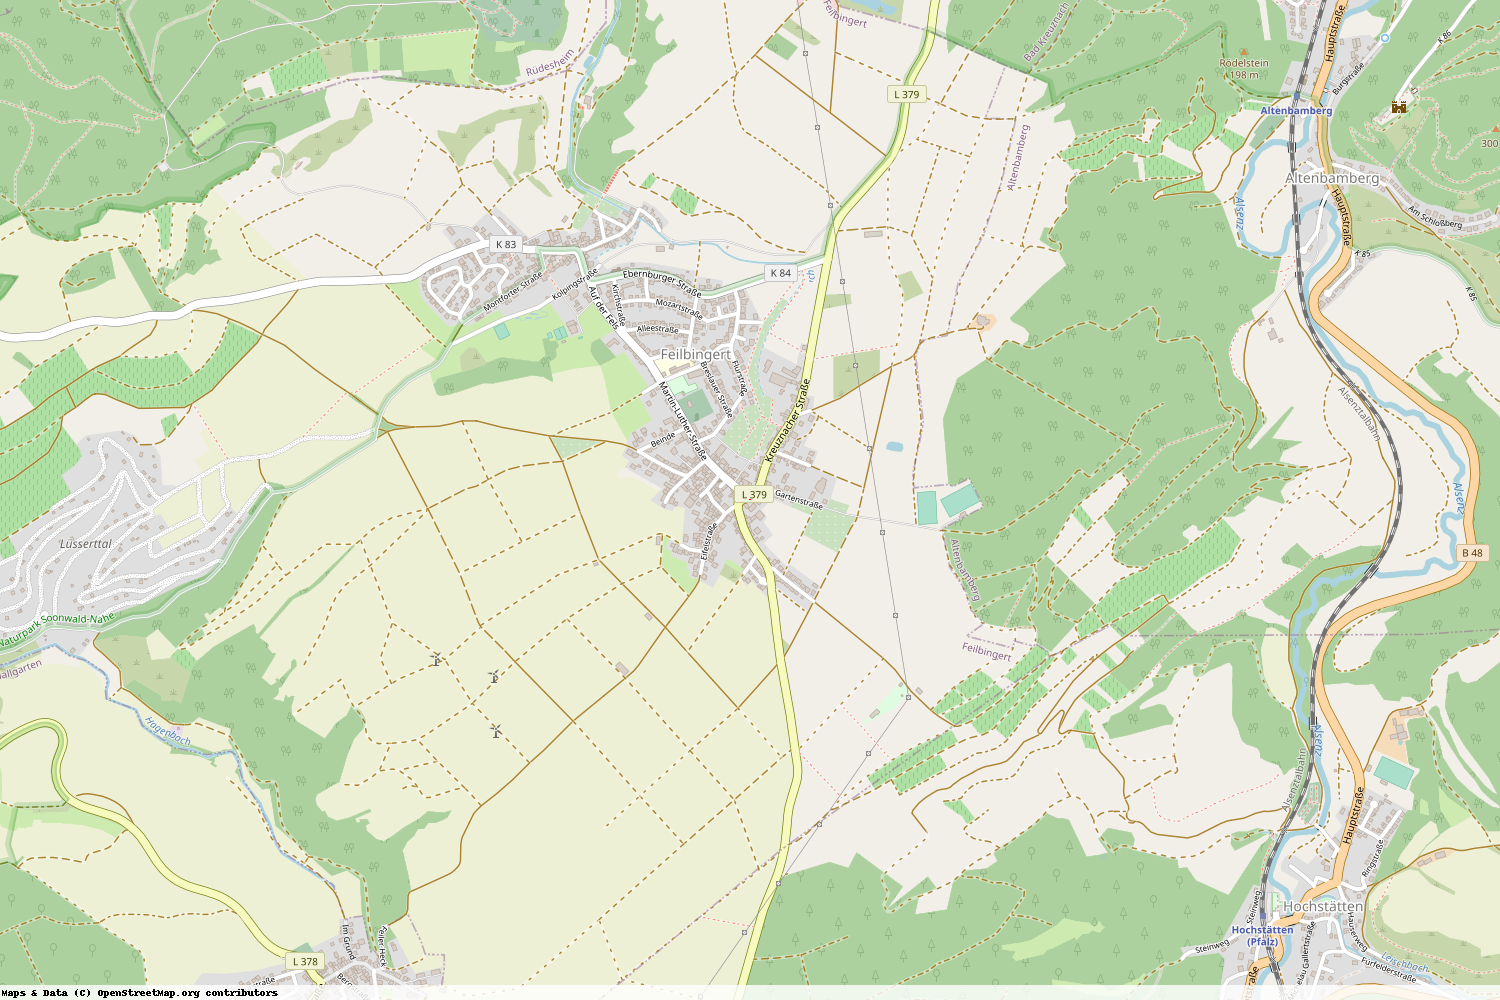 Ist gerade Stromausfall in Rheinland-Pfalz - Bad Kreuznach - Feilbingert?